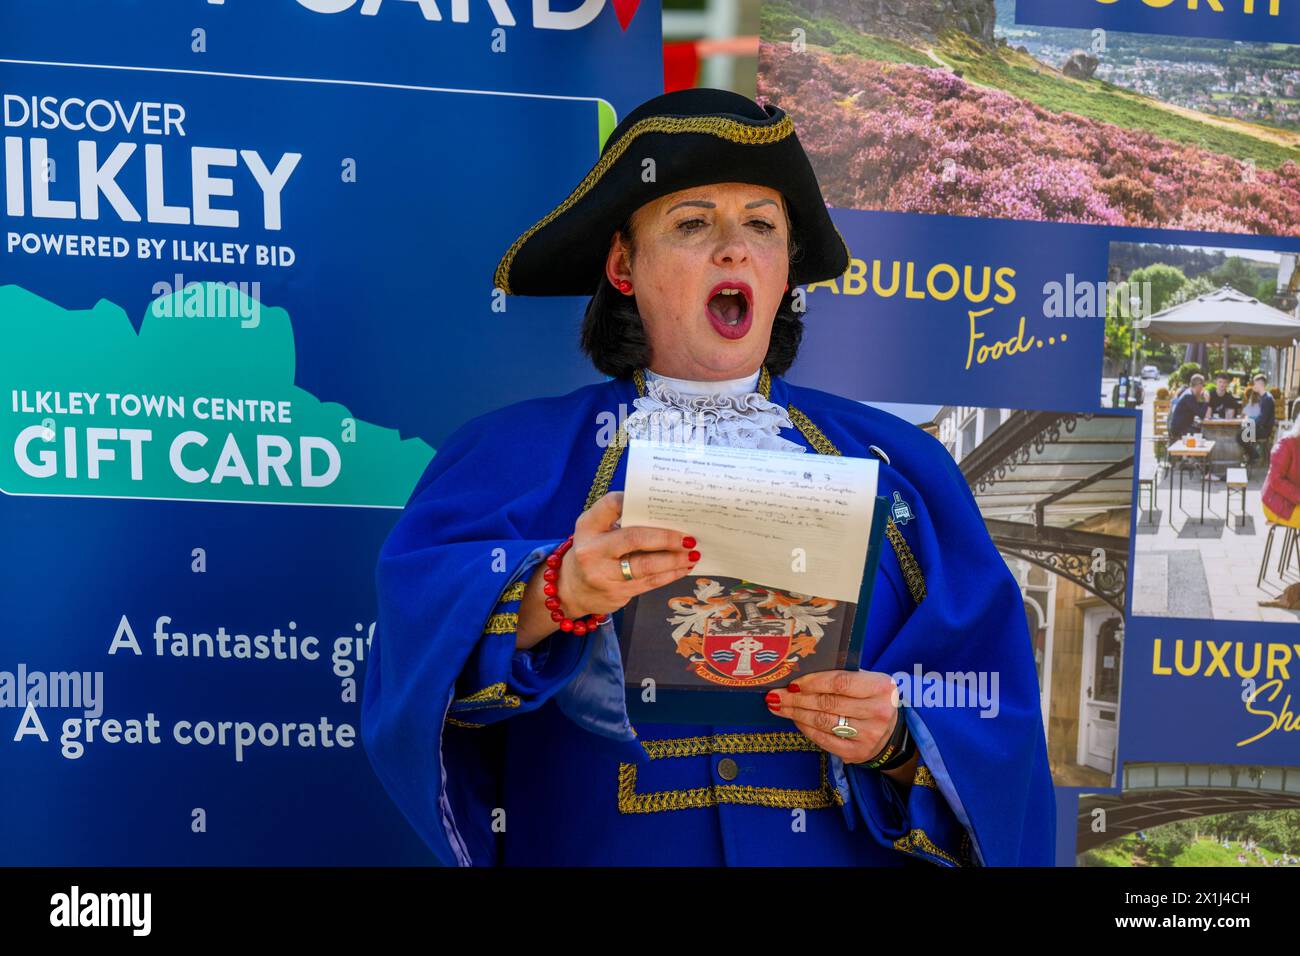 Les vêtements bleus de la femme crier de la ville) proclamant oyez, faisant une proclamation publique forte et annonce - Ilkley, West Yorkshire, Angleterre, Royaume-Uni. Banque D'Images